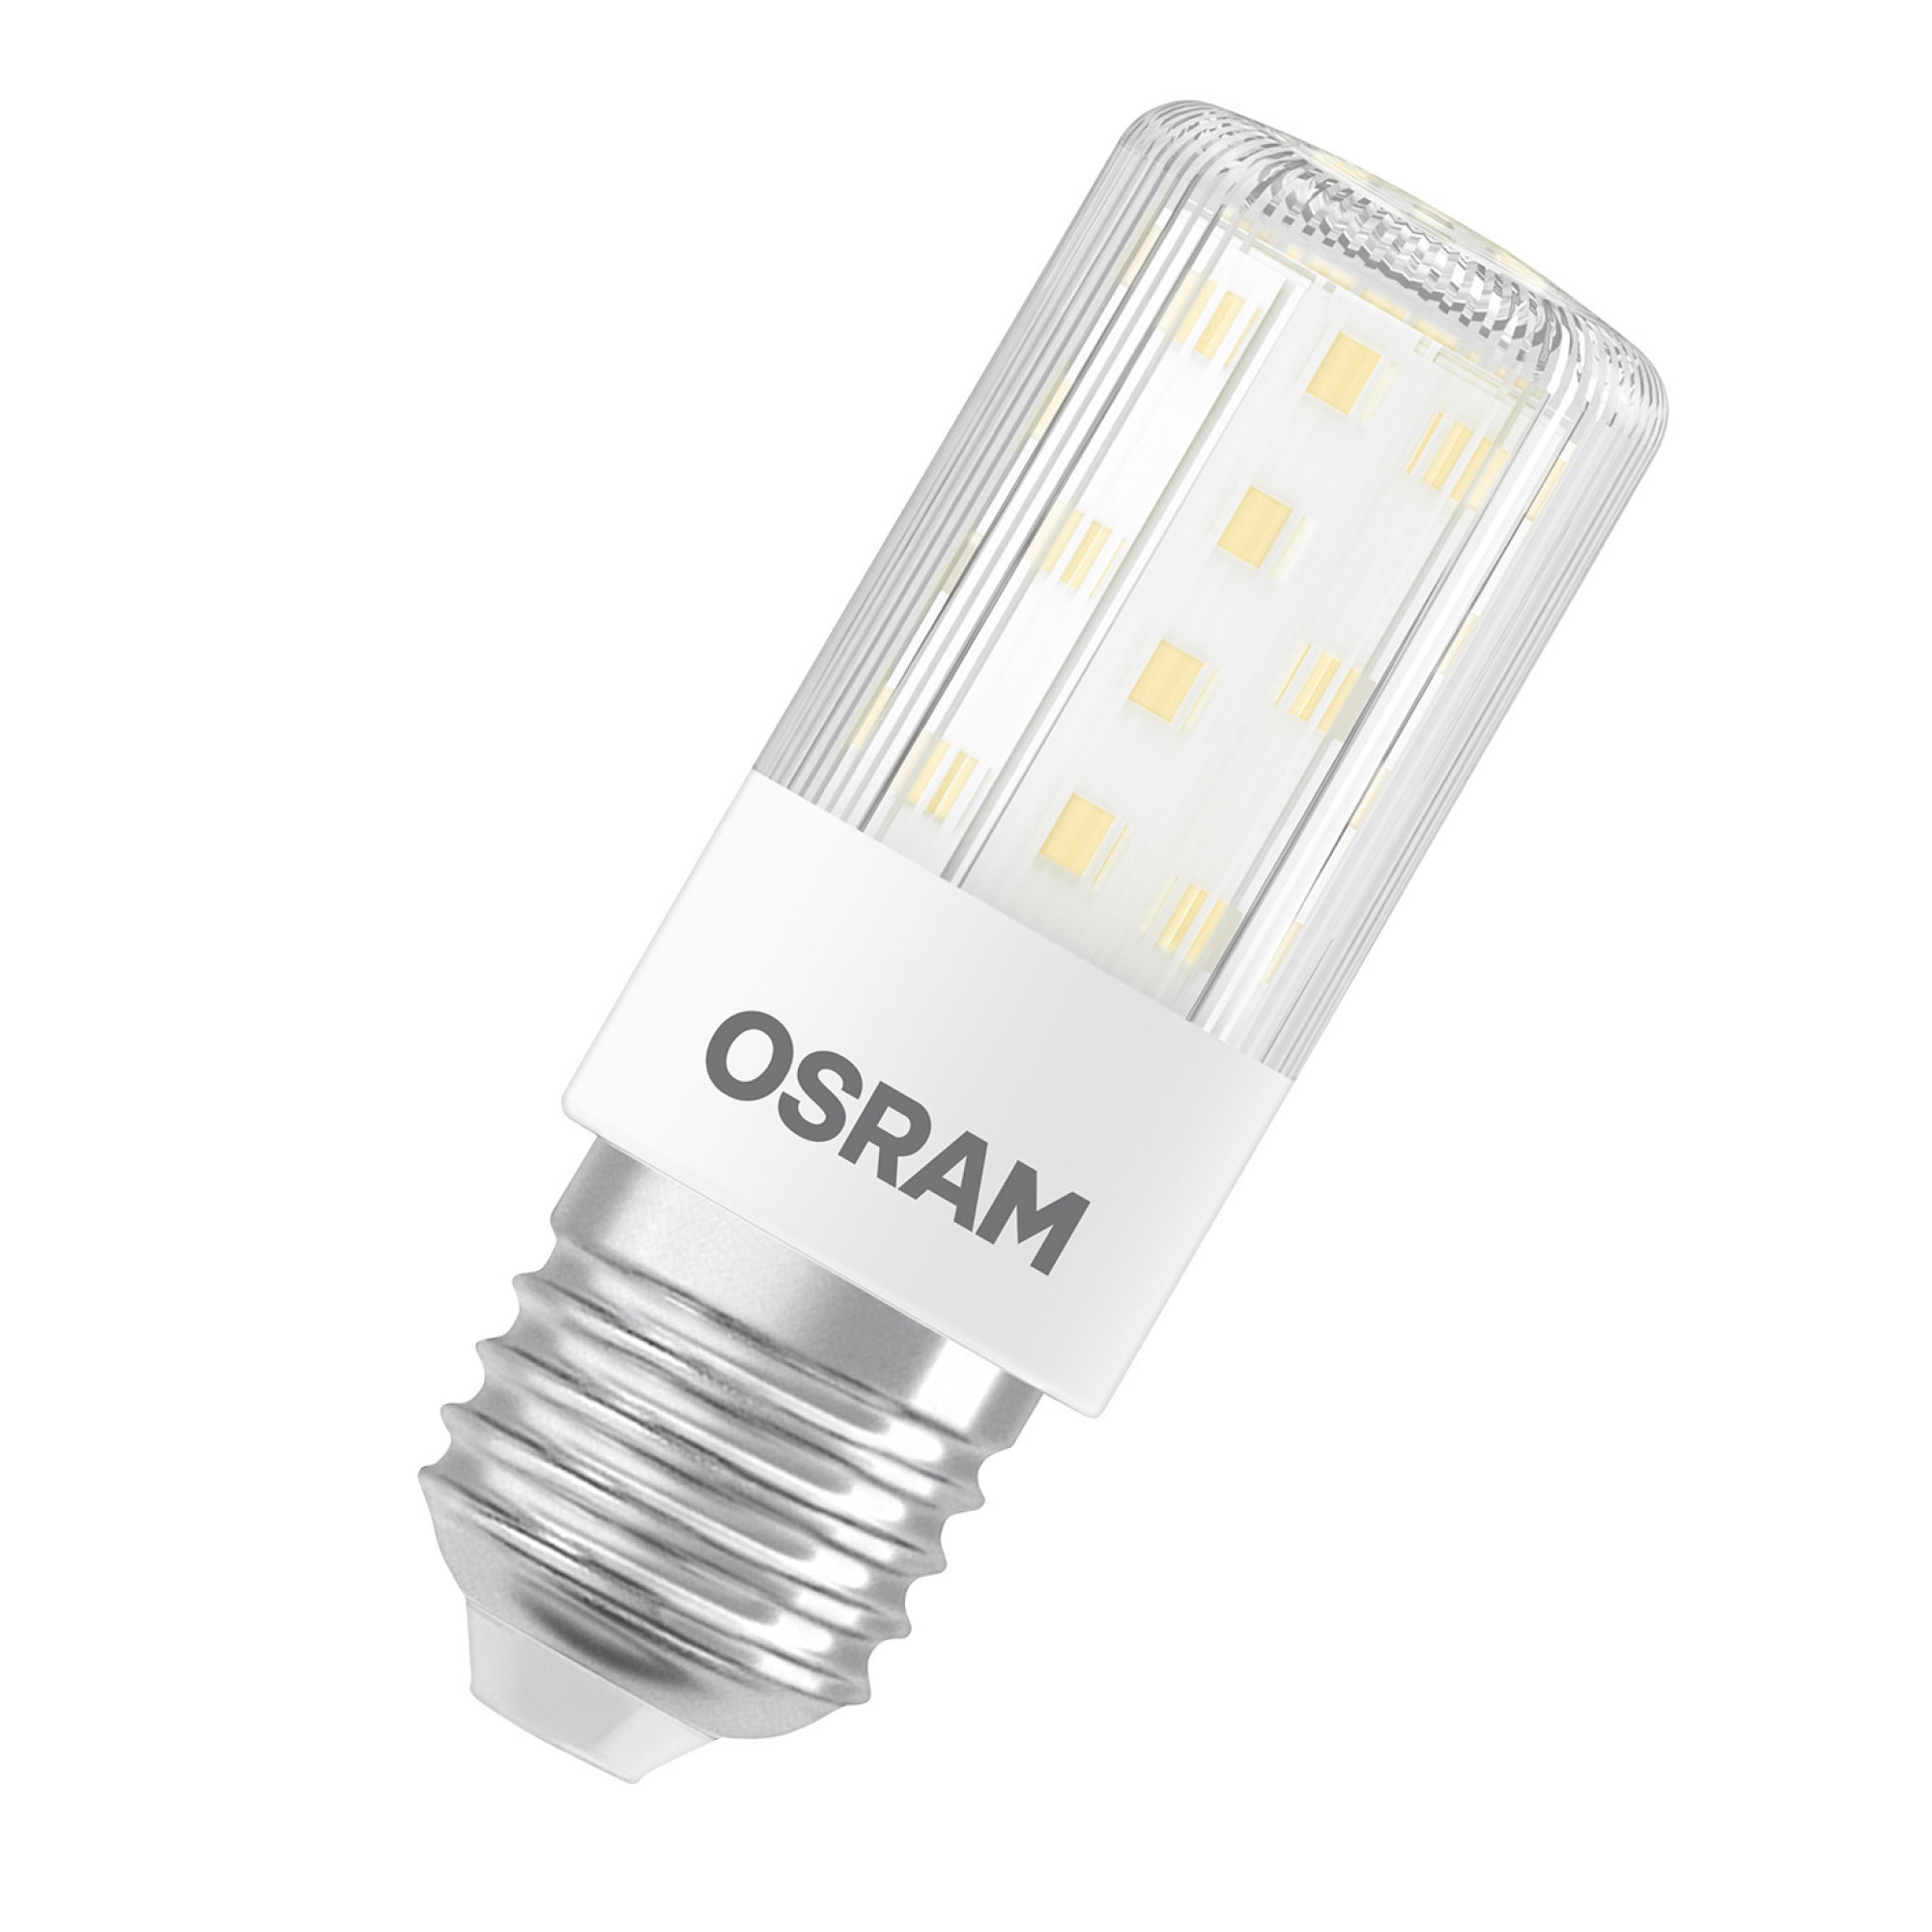 OSRAM LED T SLIM 60 320° DIM 7.3W 827 230V E27 2700K 806lm